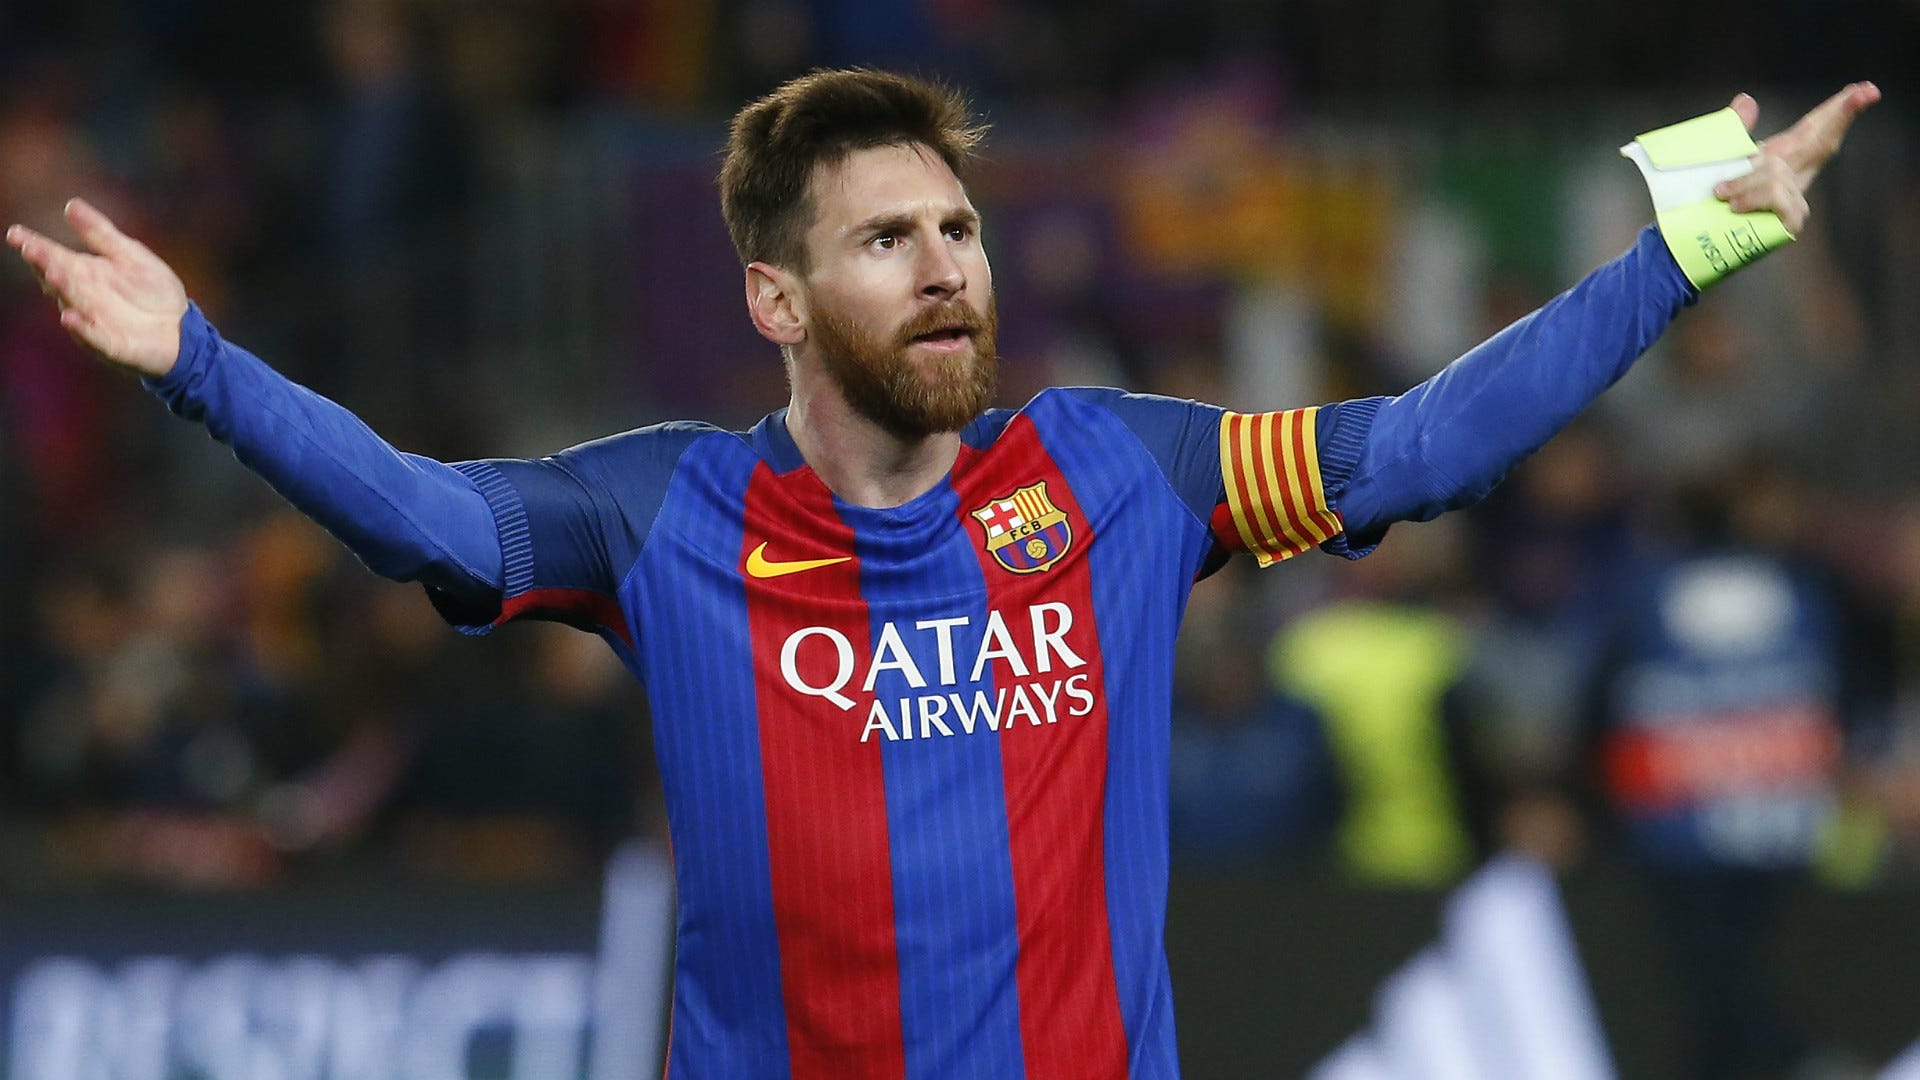 Không ai có thể chặn được Messi khi anh ta muốn tỏa sáng. Tuy nhiên, trên sân cỏ không ít lần Messi đã bị chặn đứng. Nhưng đó cũng chỉ là thử thách mà anh ta luôn vượt qua để trở thành người hùng của đội tuyển Argentina và Barca. Ngắm các bức ảnh về Messi bị chặn để cảm nhận sự trưởng thành của ngôi sao này.